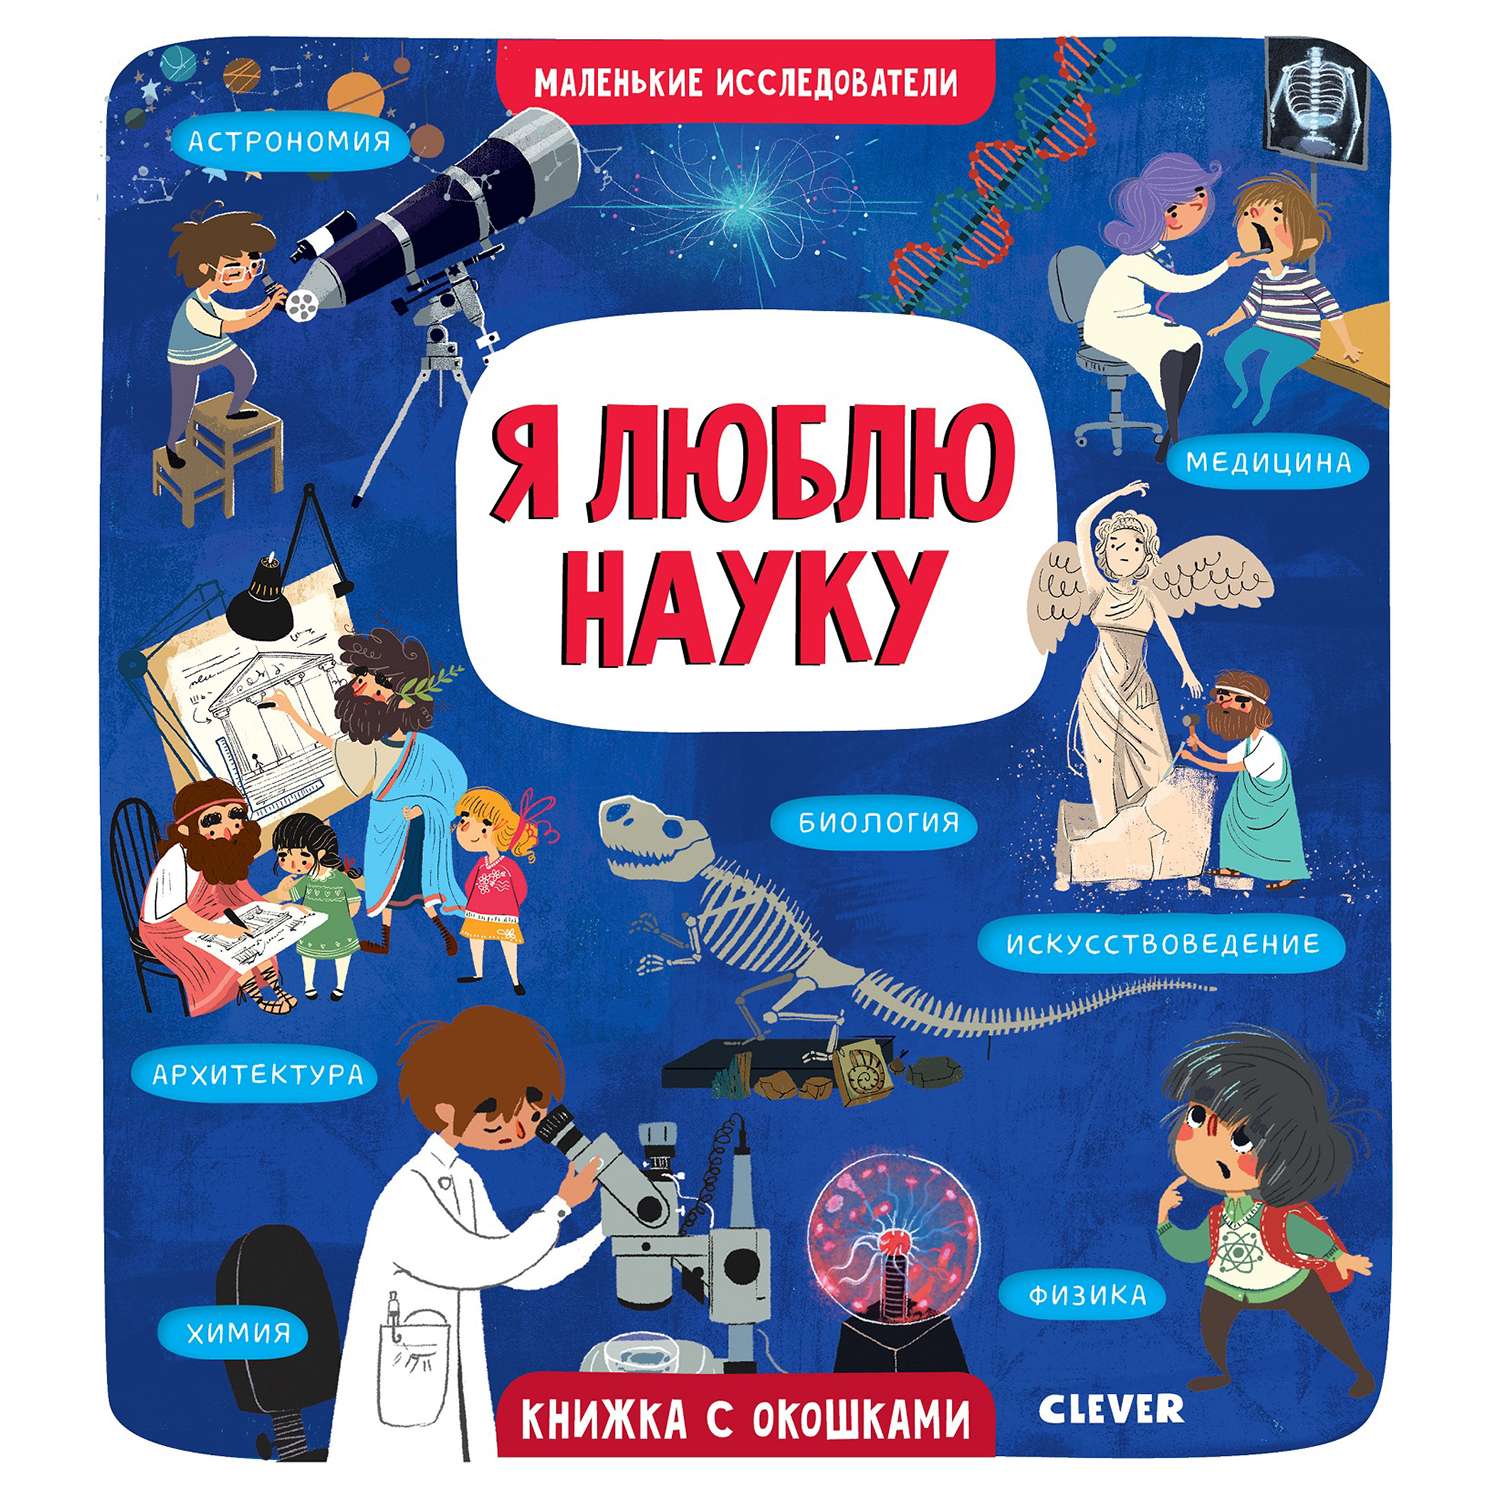 Название научных книг. Маленькие исследователи я люблю науку Коровкина. Книги для детей. Научные книги для детей. Детские книги о науке.